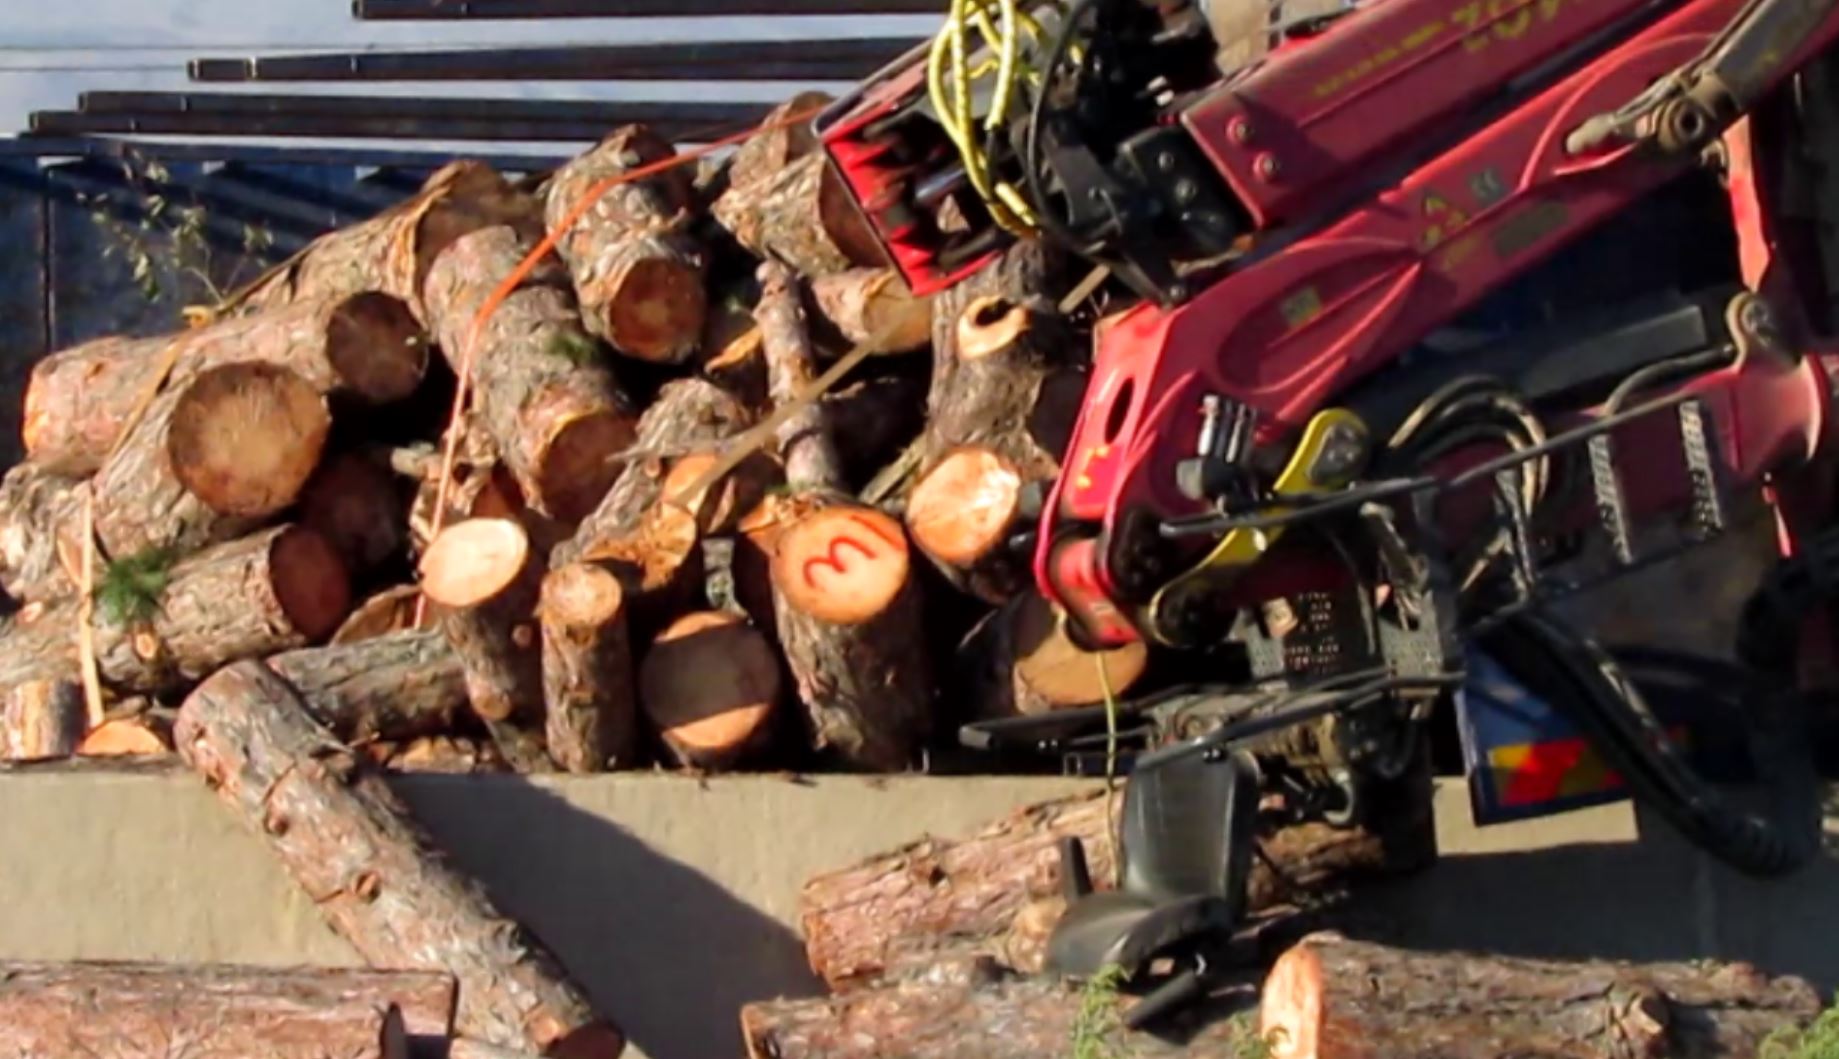 Σοβαρό ατύχημα με ανατροπή νταλίκας γεμάτης κορμούς δέντρων στην Εγνατία Οδό (video-φωτό)